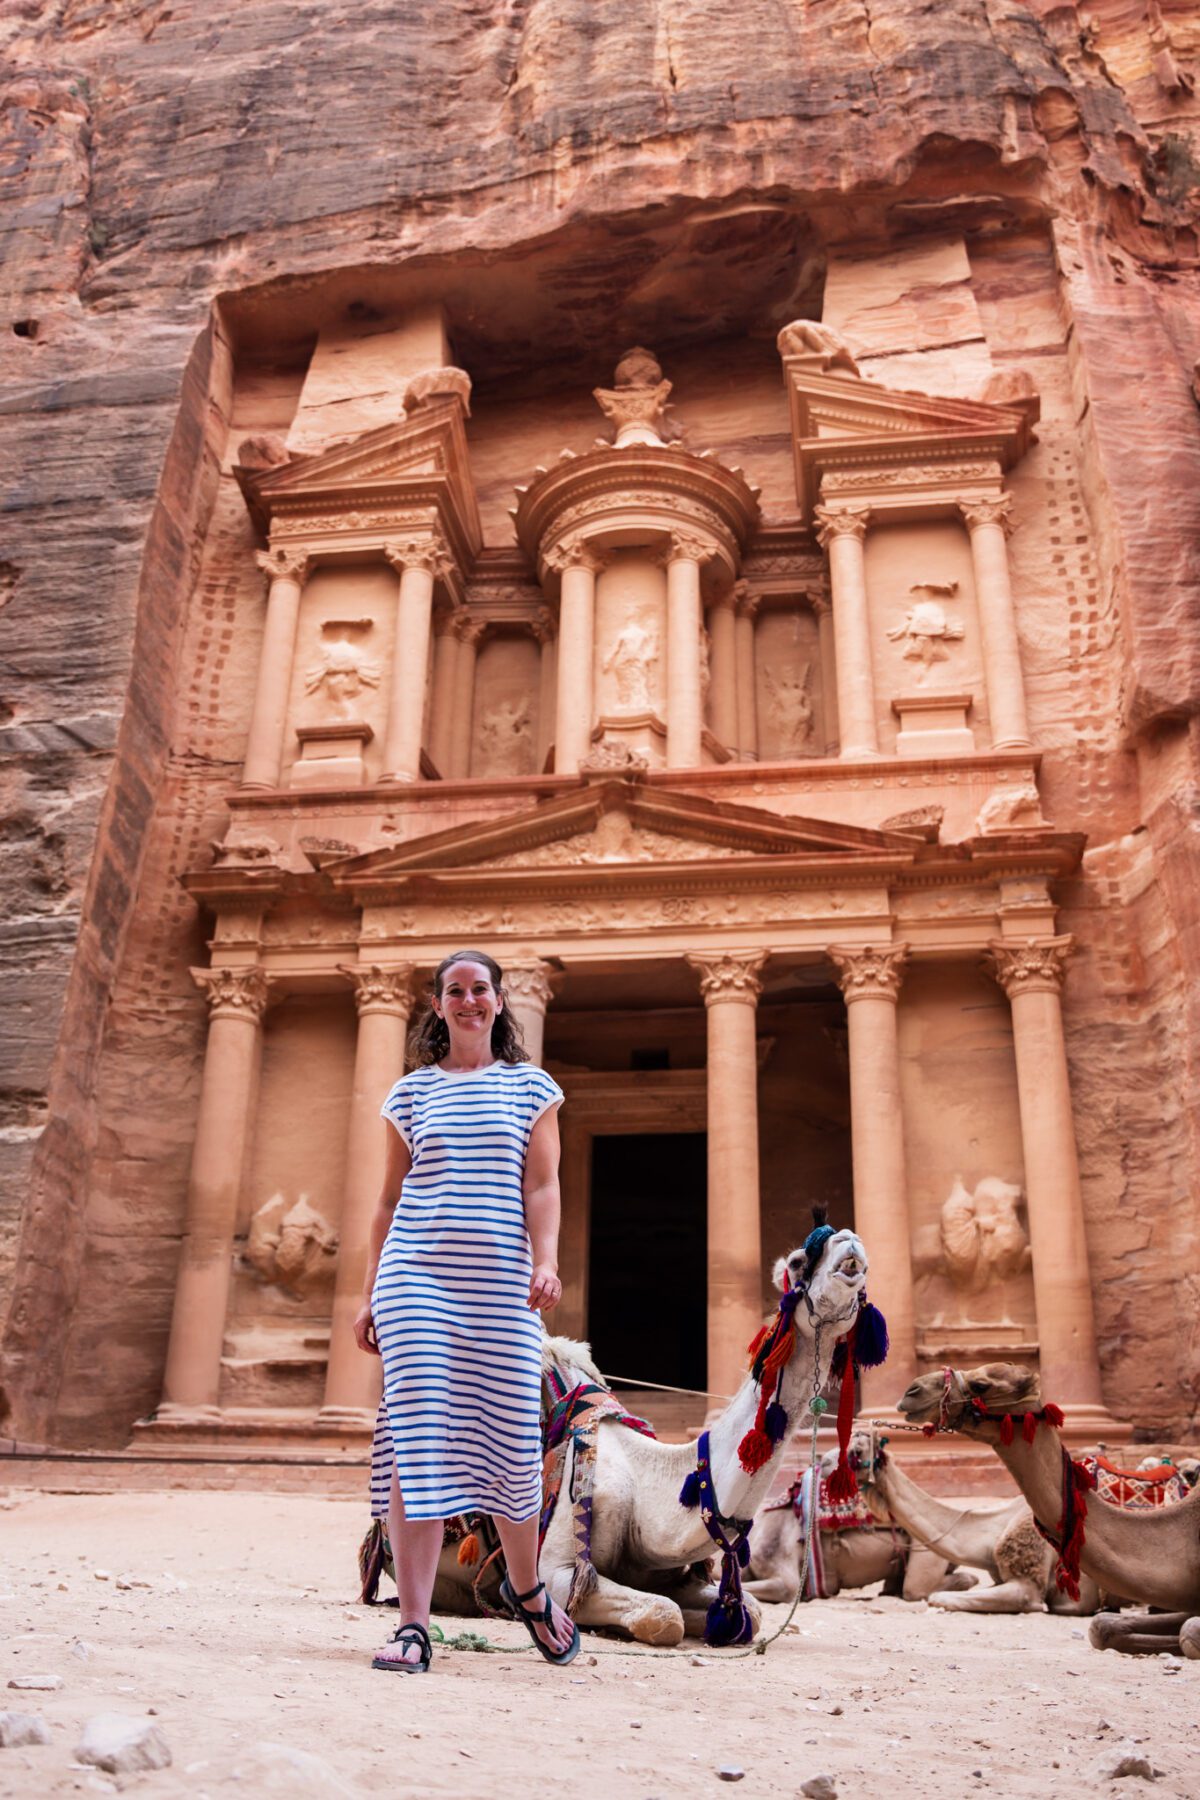 de Treasury in Petra